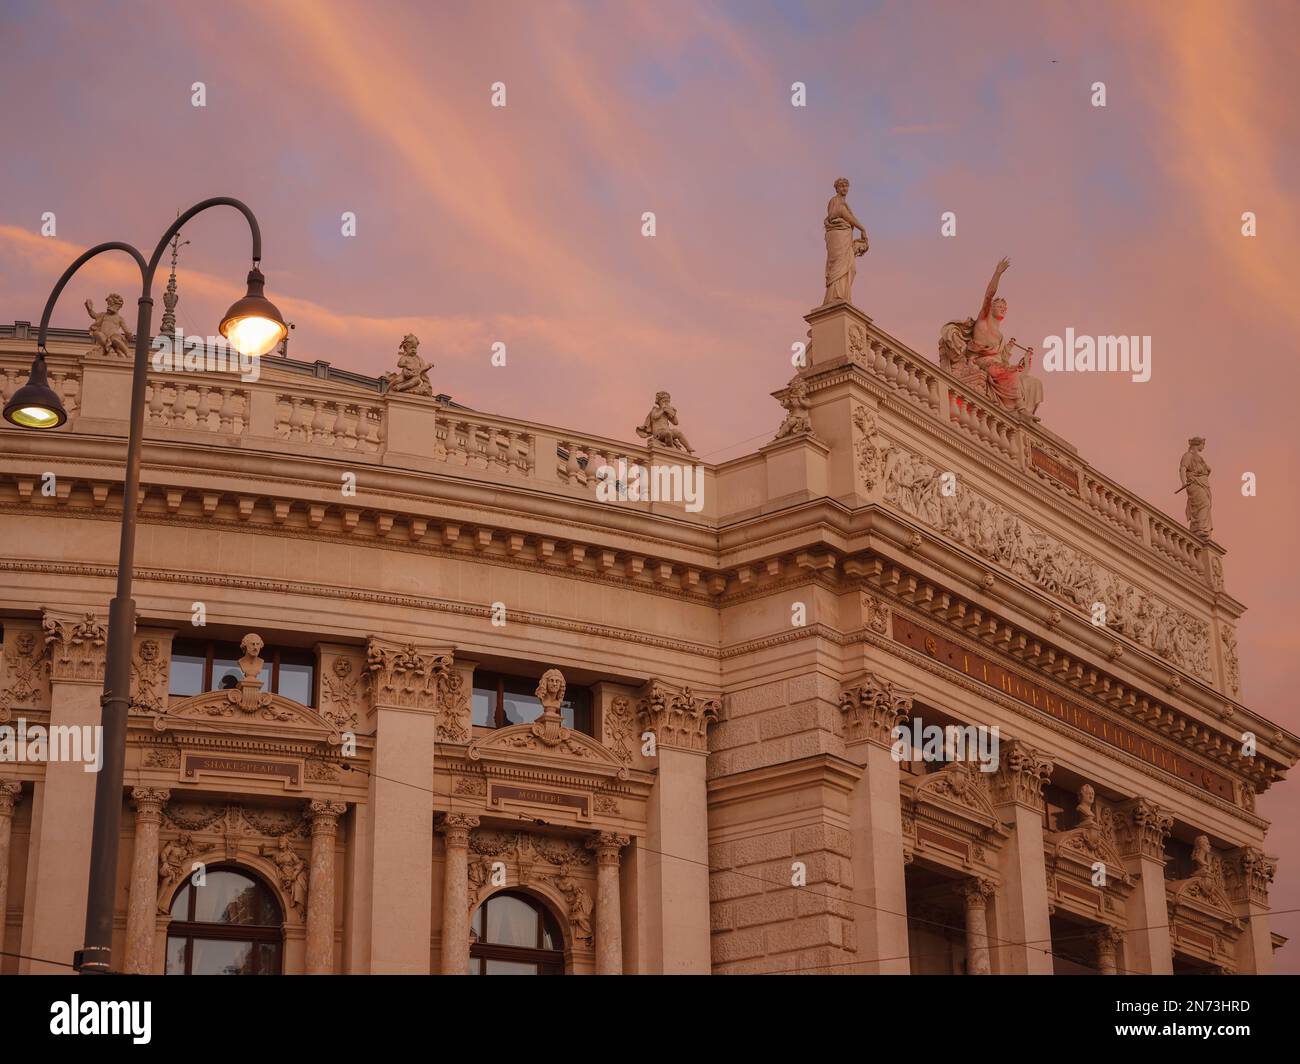 Das Burgtheater ist ein Hoftheater in der Wiener Hofburg. Eines der ältesten Theater nicht nur in Österreich, sondern in ganz Europa. Über dem Himmel bei Sonnenuntergang Stockfoto